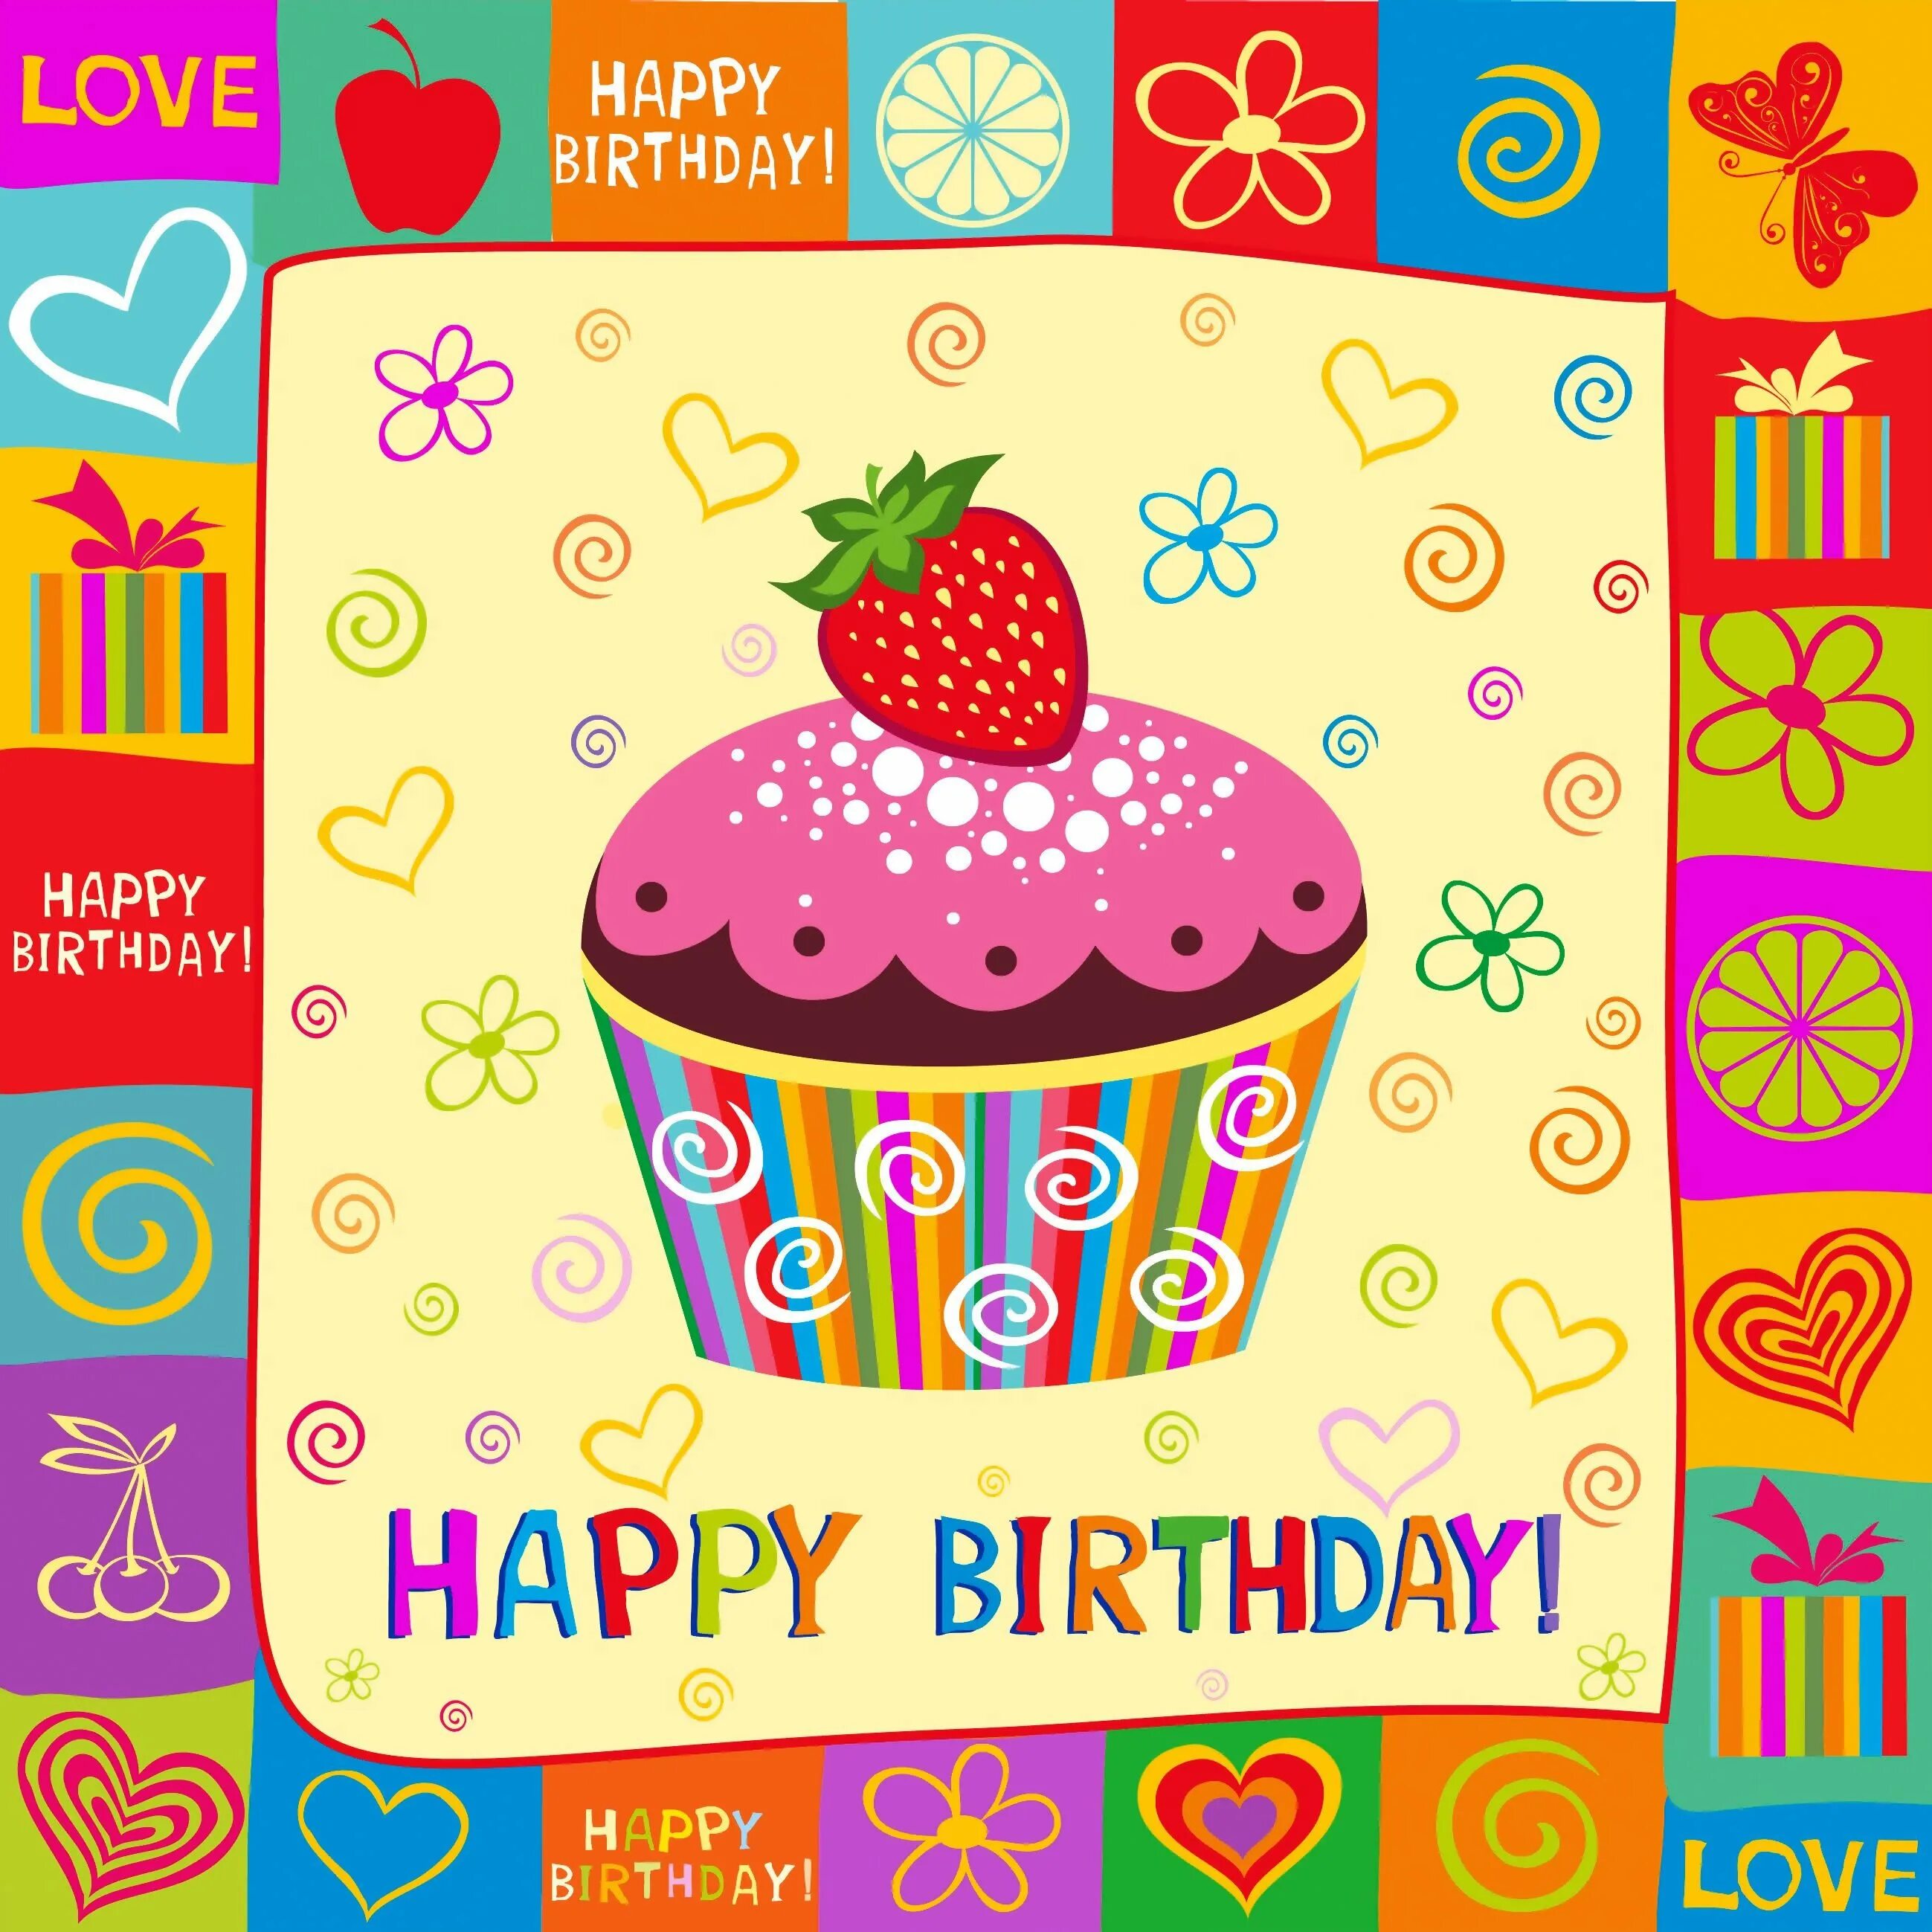 Др по английскому языку. Стильные открытки с днем рождения. Открыта с днём рождения. С днем рождения иллюстрация. Стильное поздравление с днем рождения.